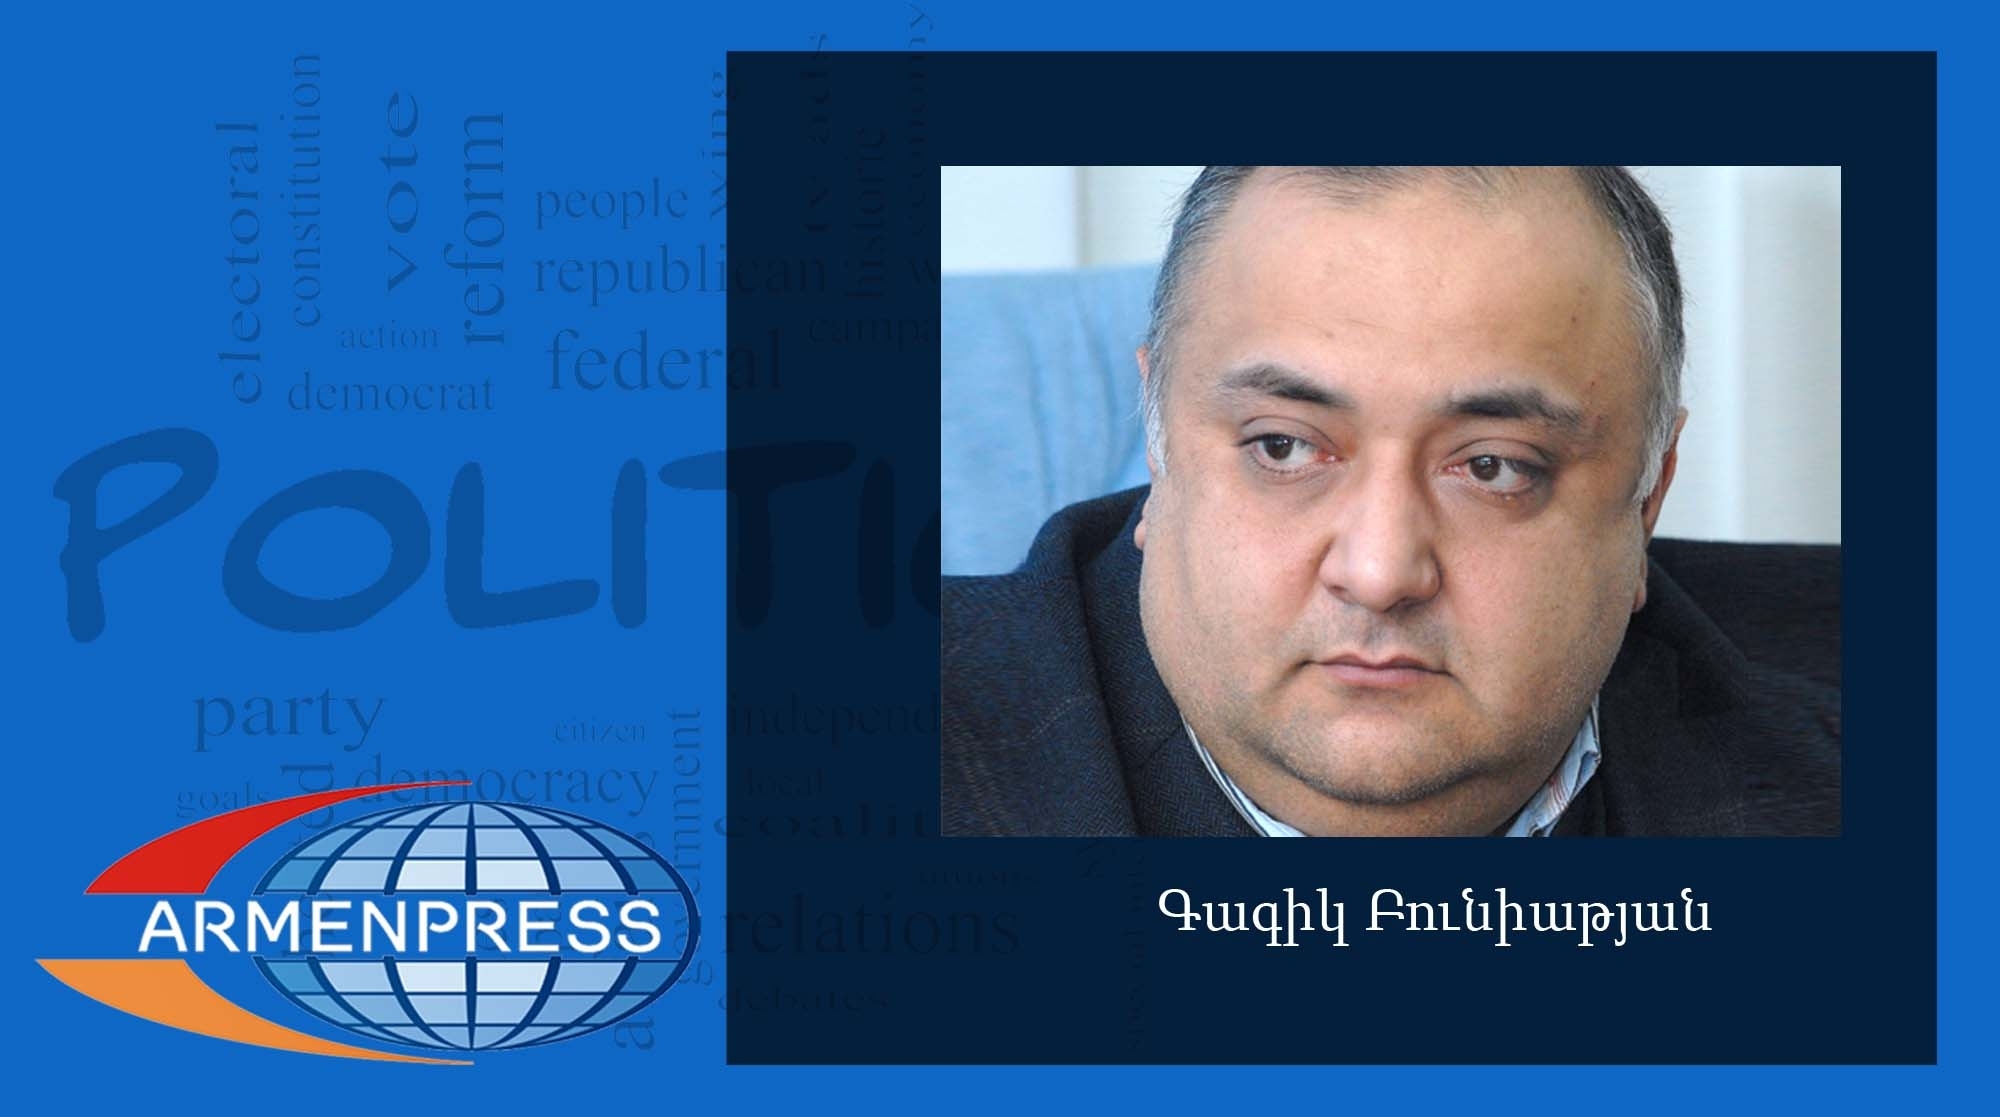 
Планируется начать цифровое телевещание в Армении с начала 2015 года
